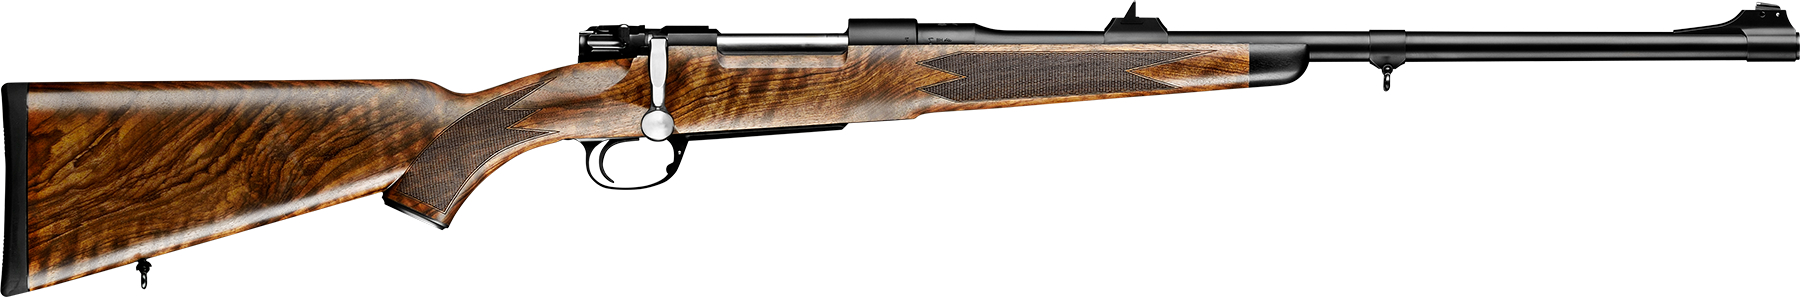 Mauser M98 Standard Expert rifle